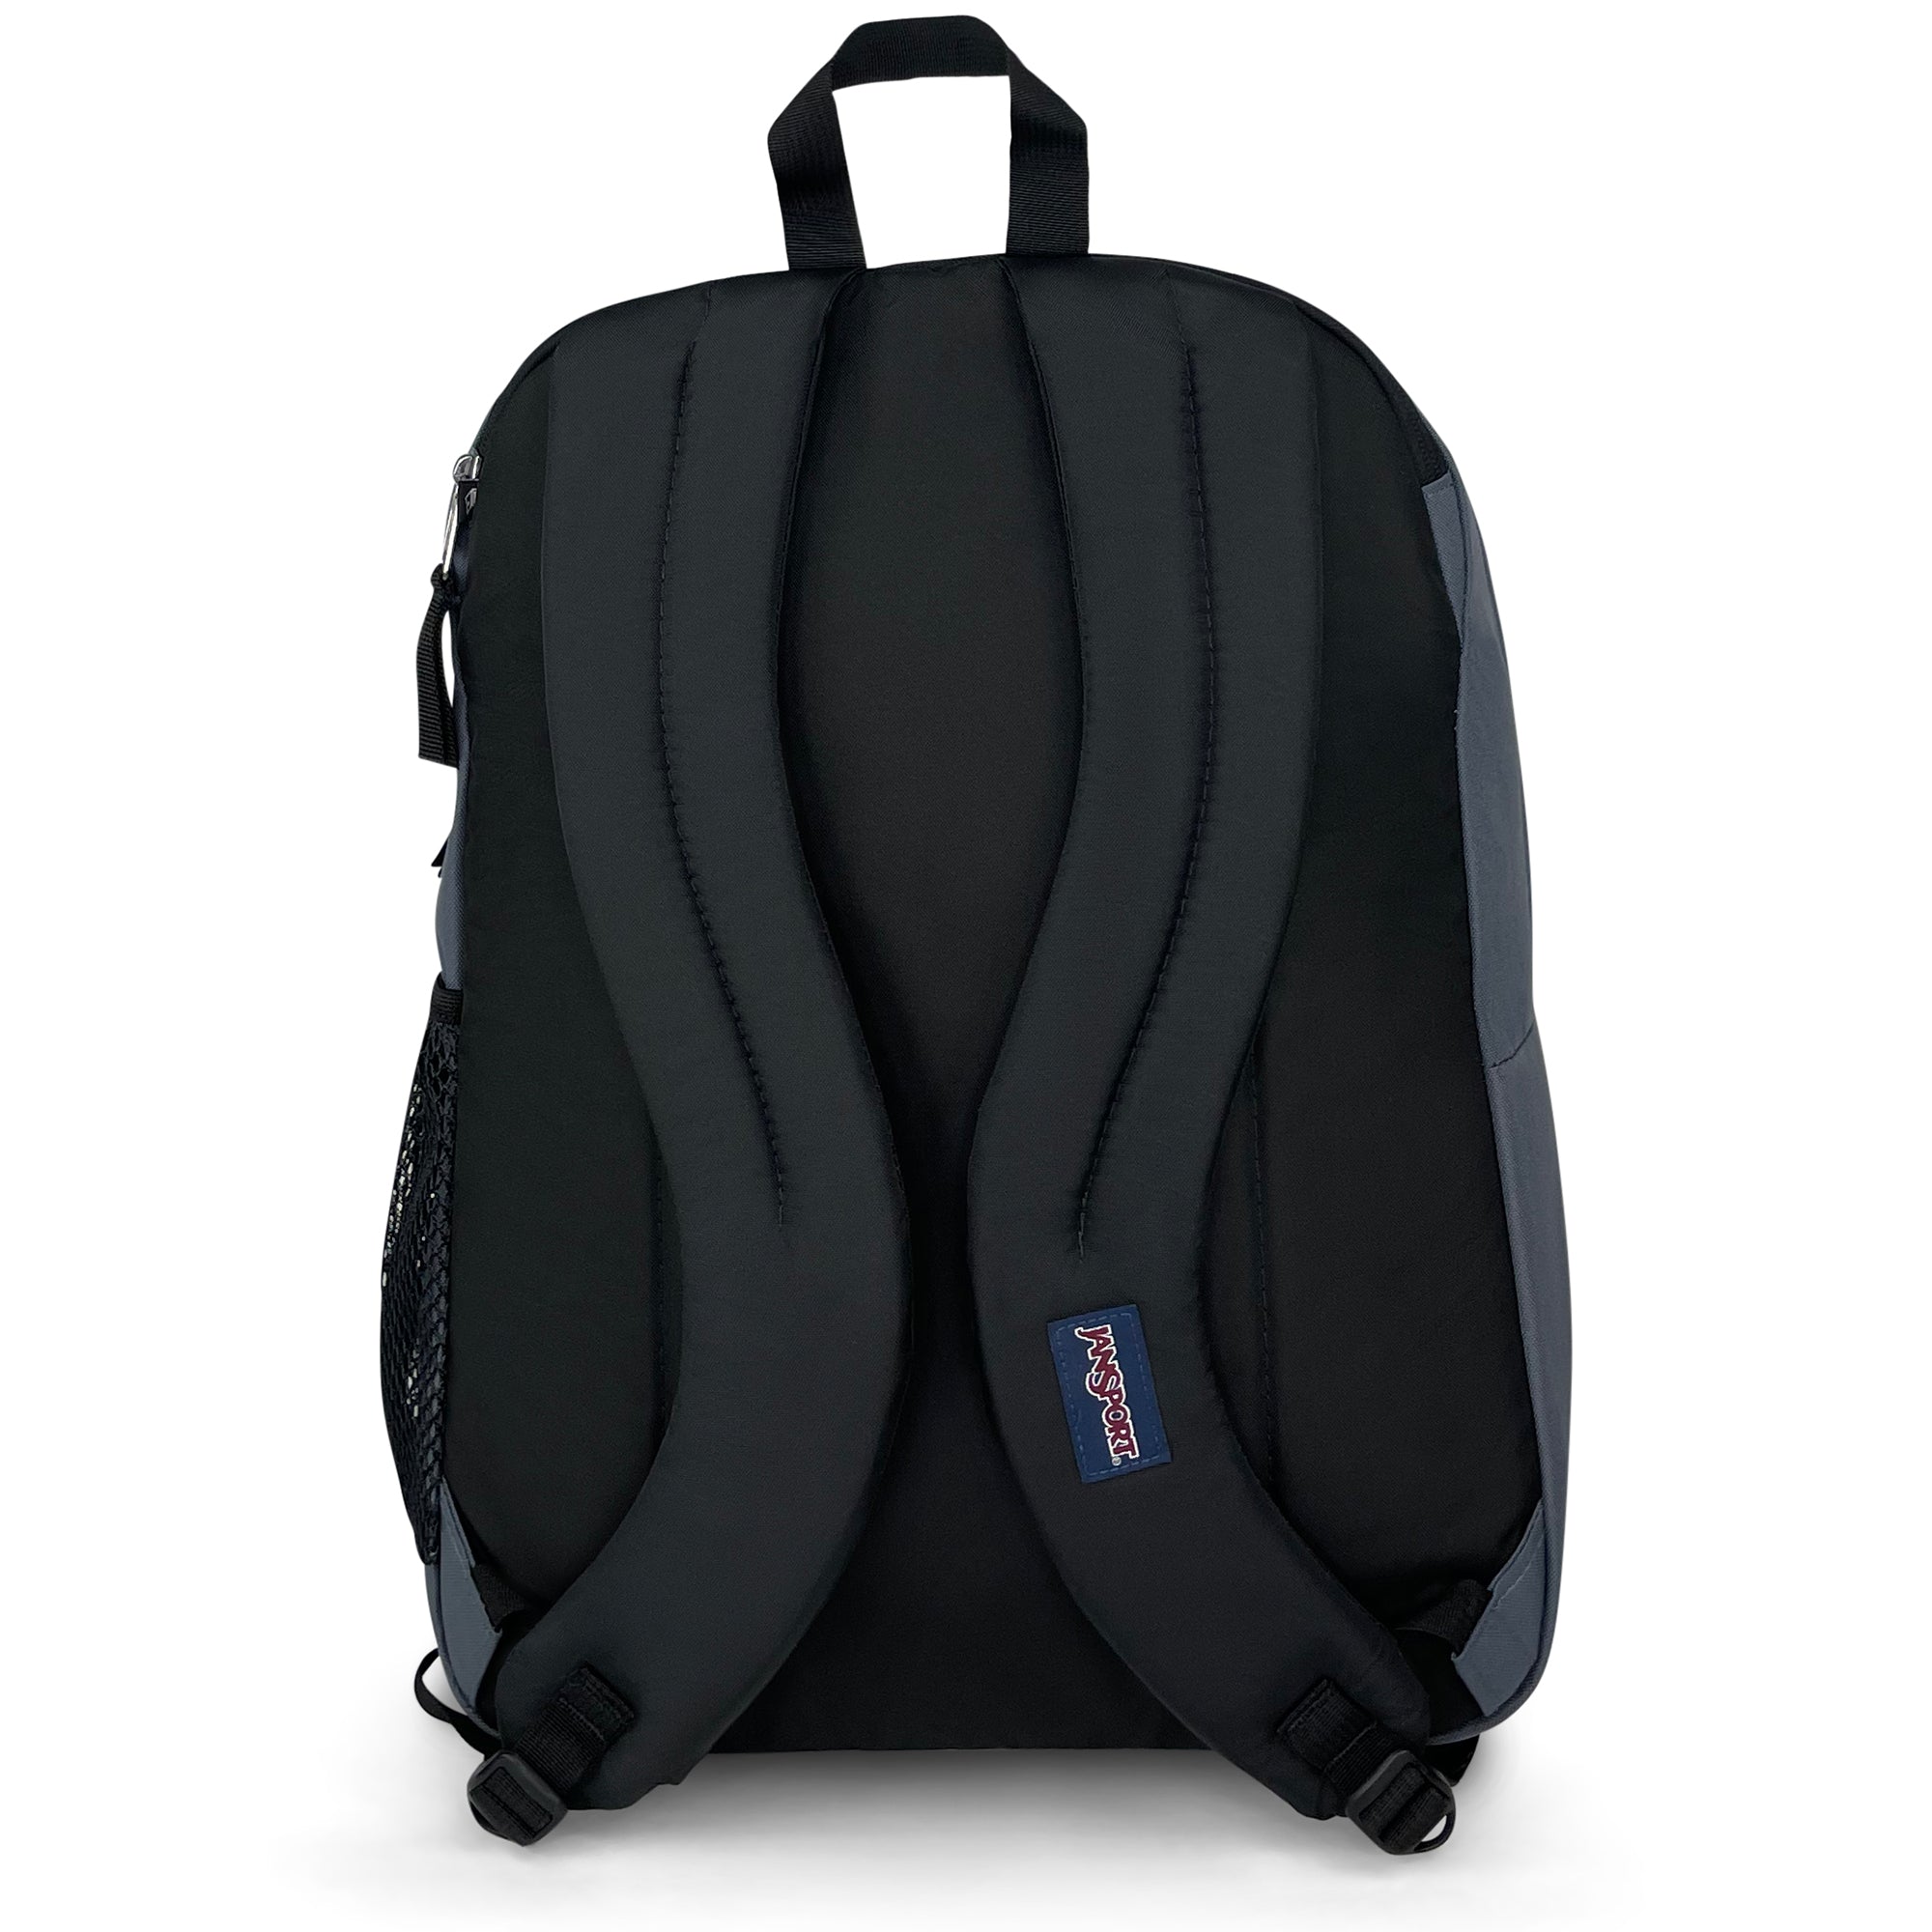 Big Student Backpack-Backpack-Jansport-Grey-SchoolBagsAndStuff